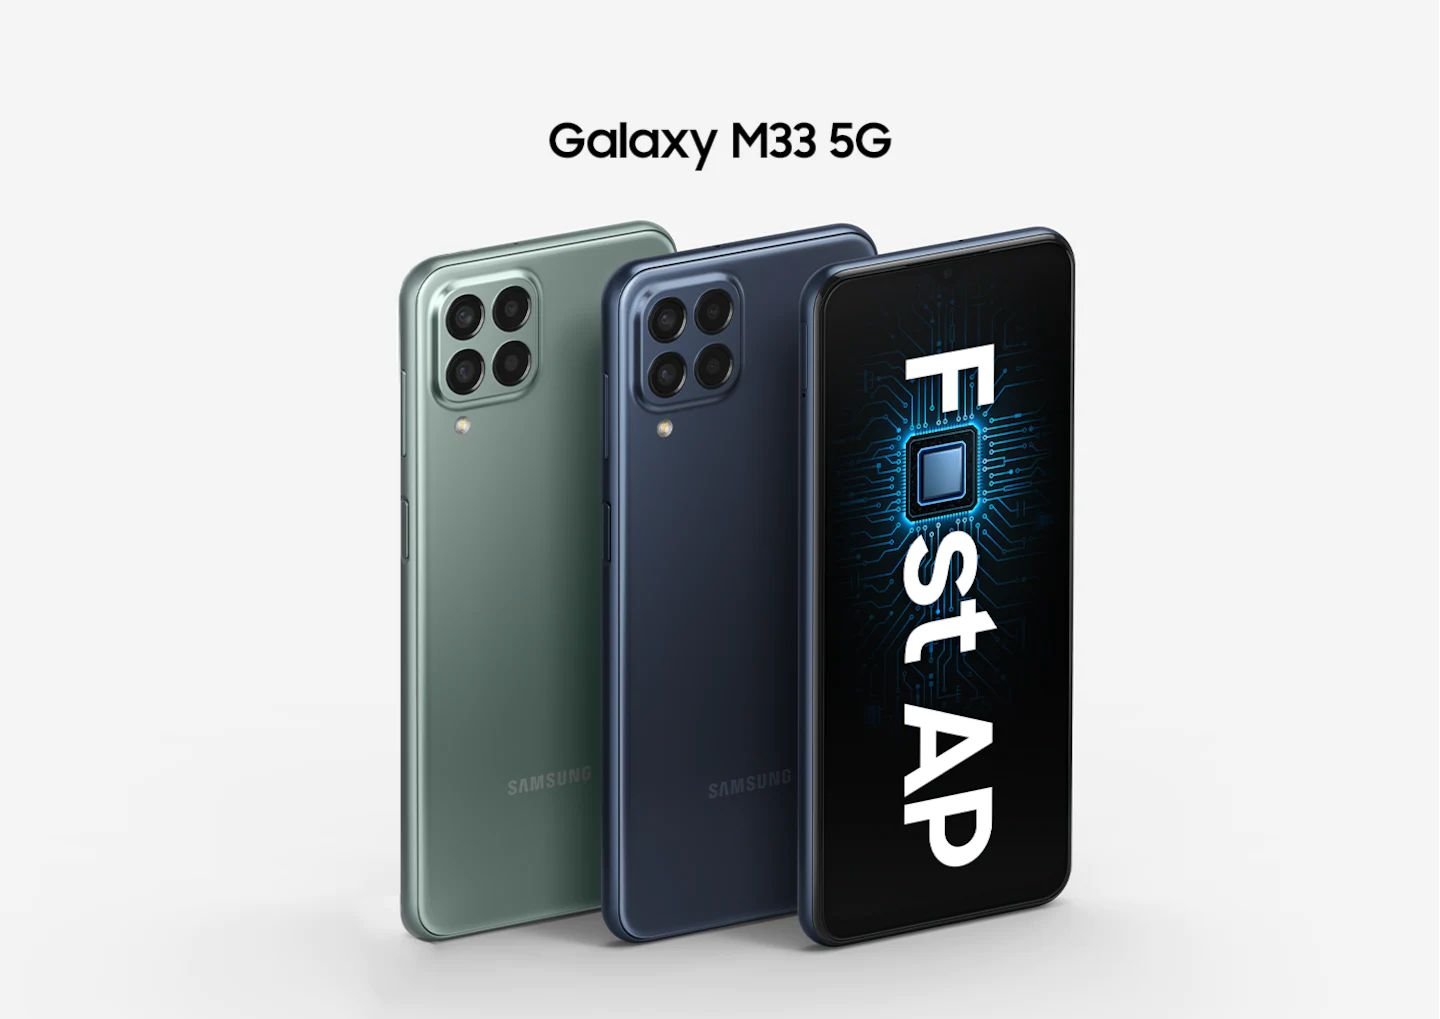 Minimal görünümlü kaliteli tasarım.  Galaxy M33 5G'nin kaliteli tasarımı, köşelerin yumuşak kıvrımlı ve kameraların minimal görünümlü olduğu basit bir temel çerçeve tasarımına sahiptir. Mavi ve yeşil renklerde gelen M33 5G ile günlük tarzınıza en uygun olan rengi tercih edebilirsiniz.